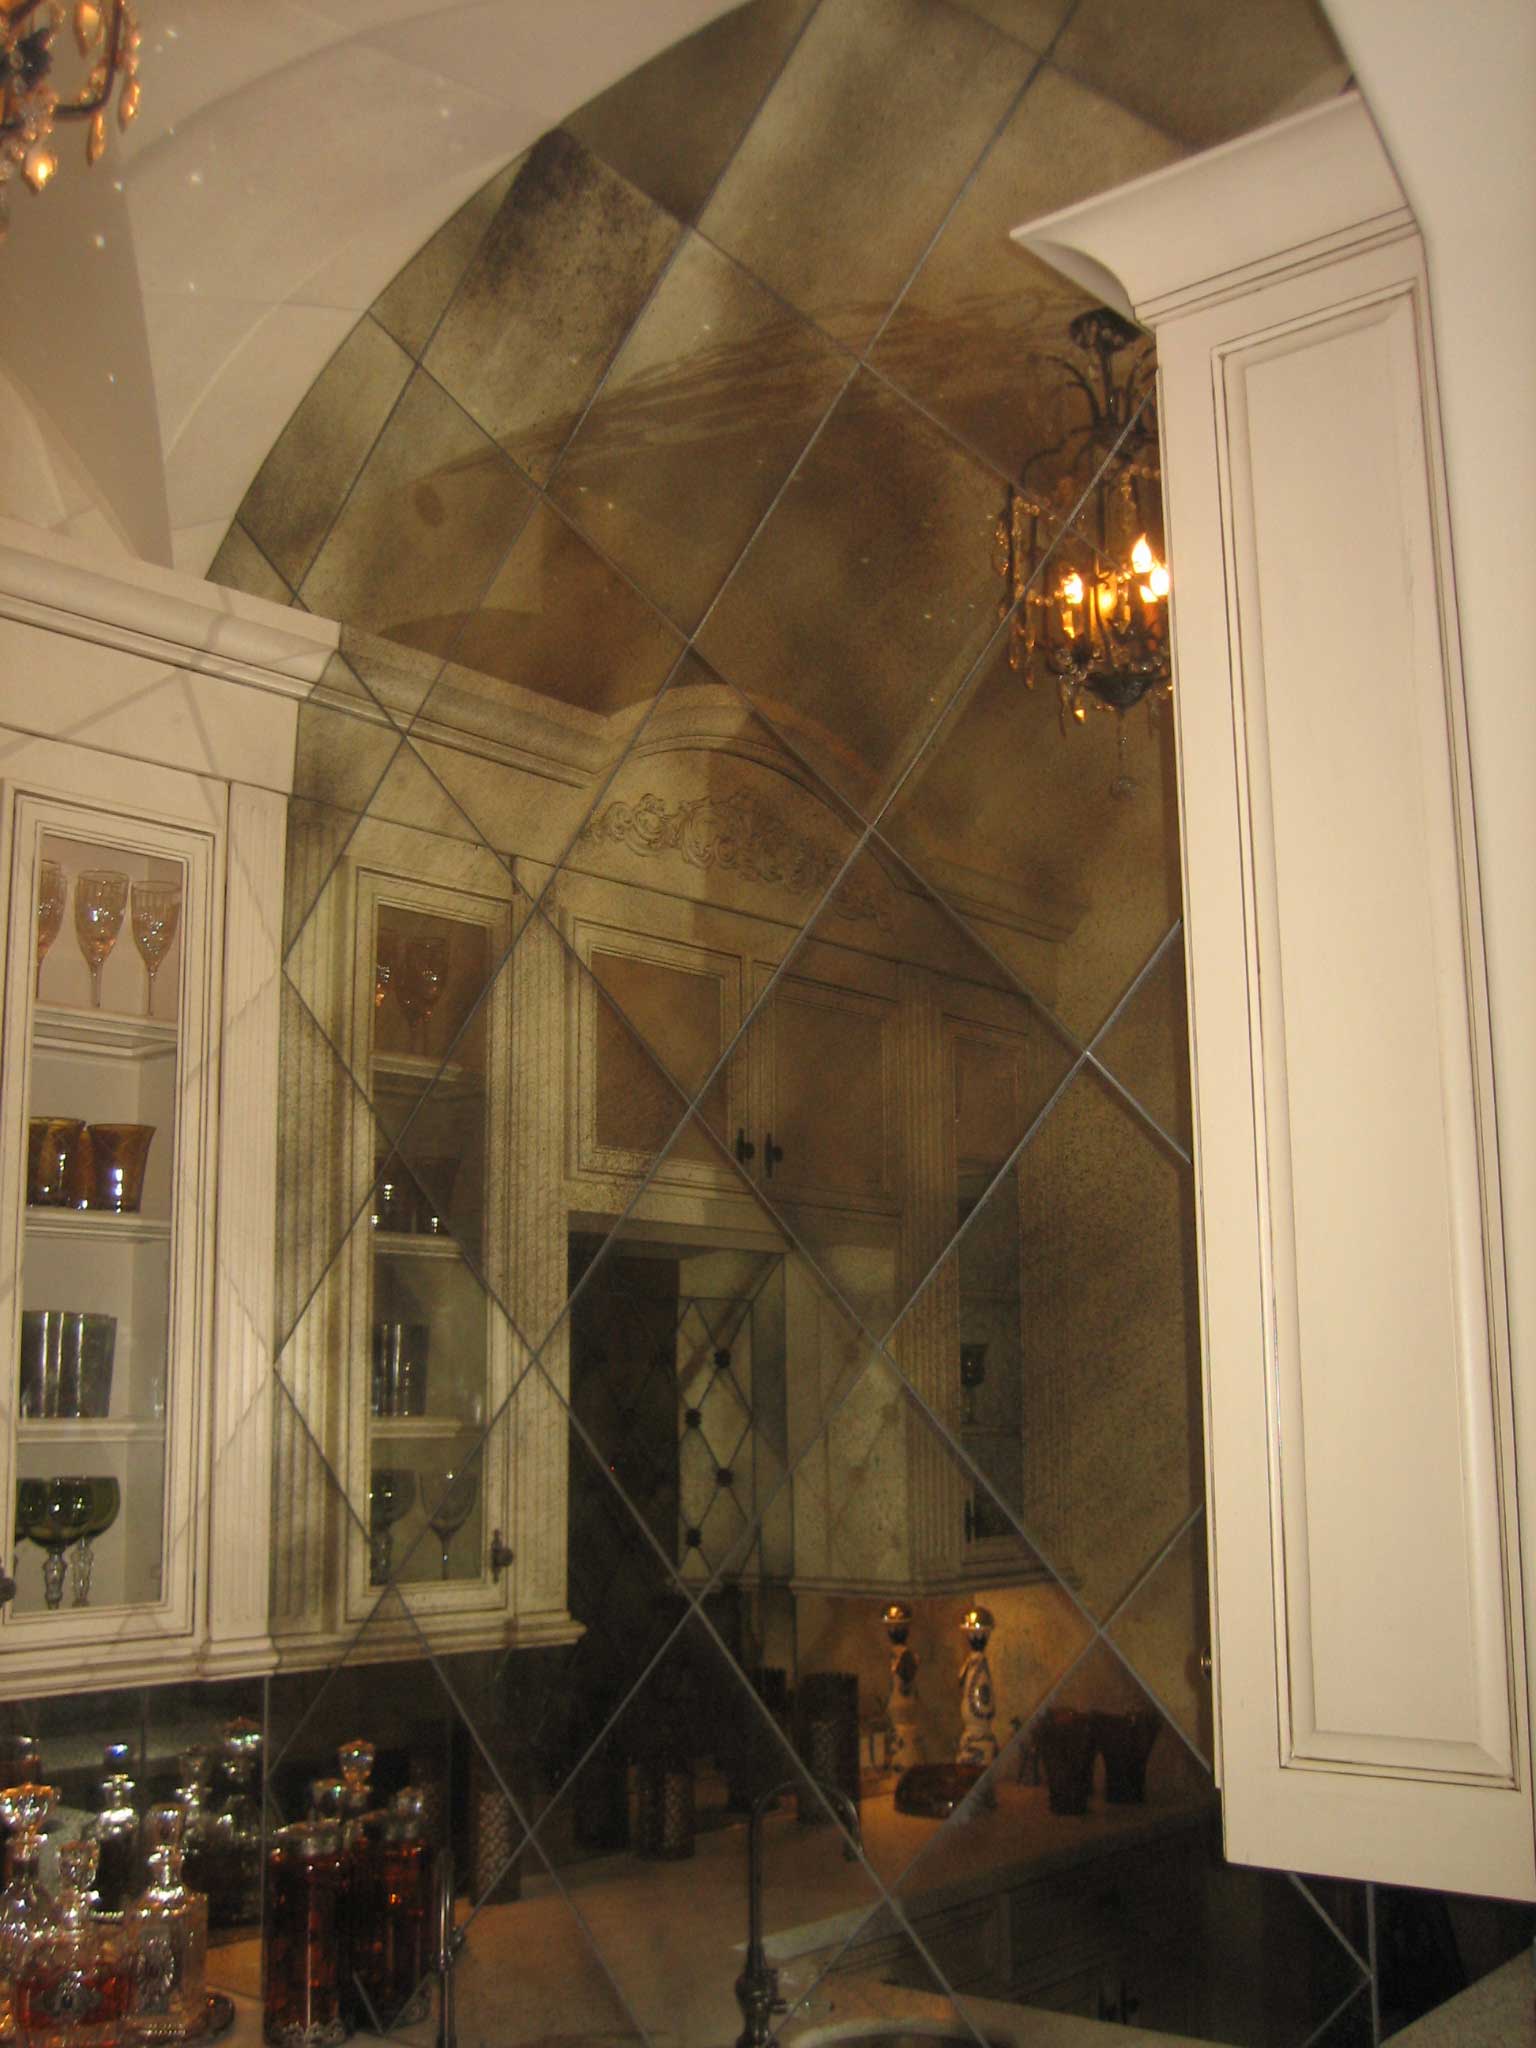 Decorative wall mirror in kitchen